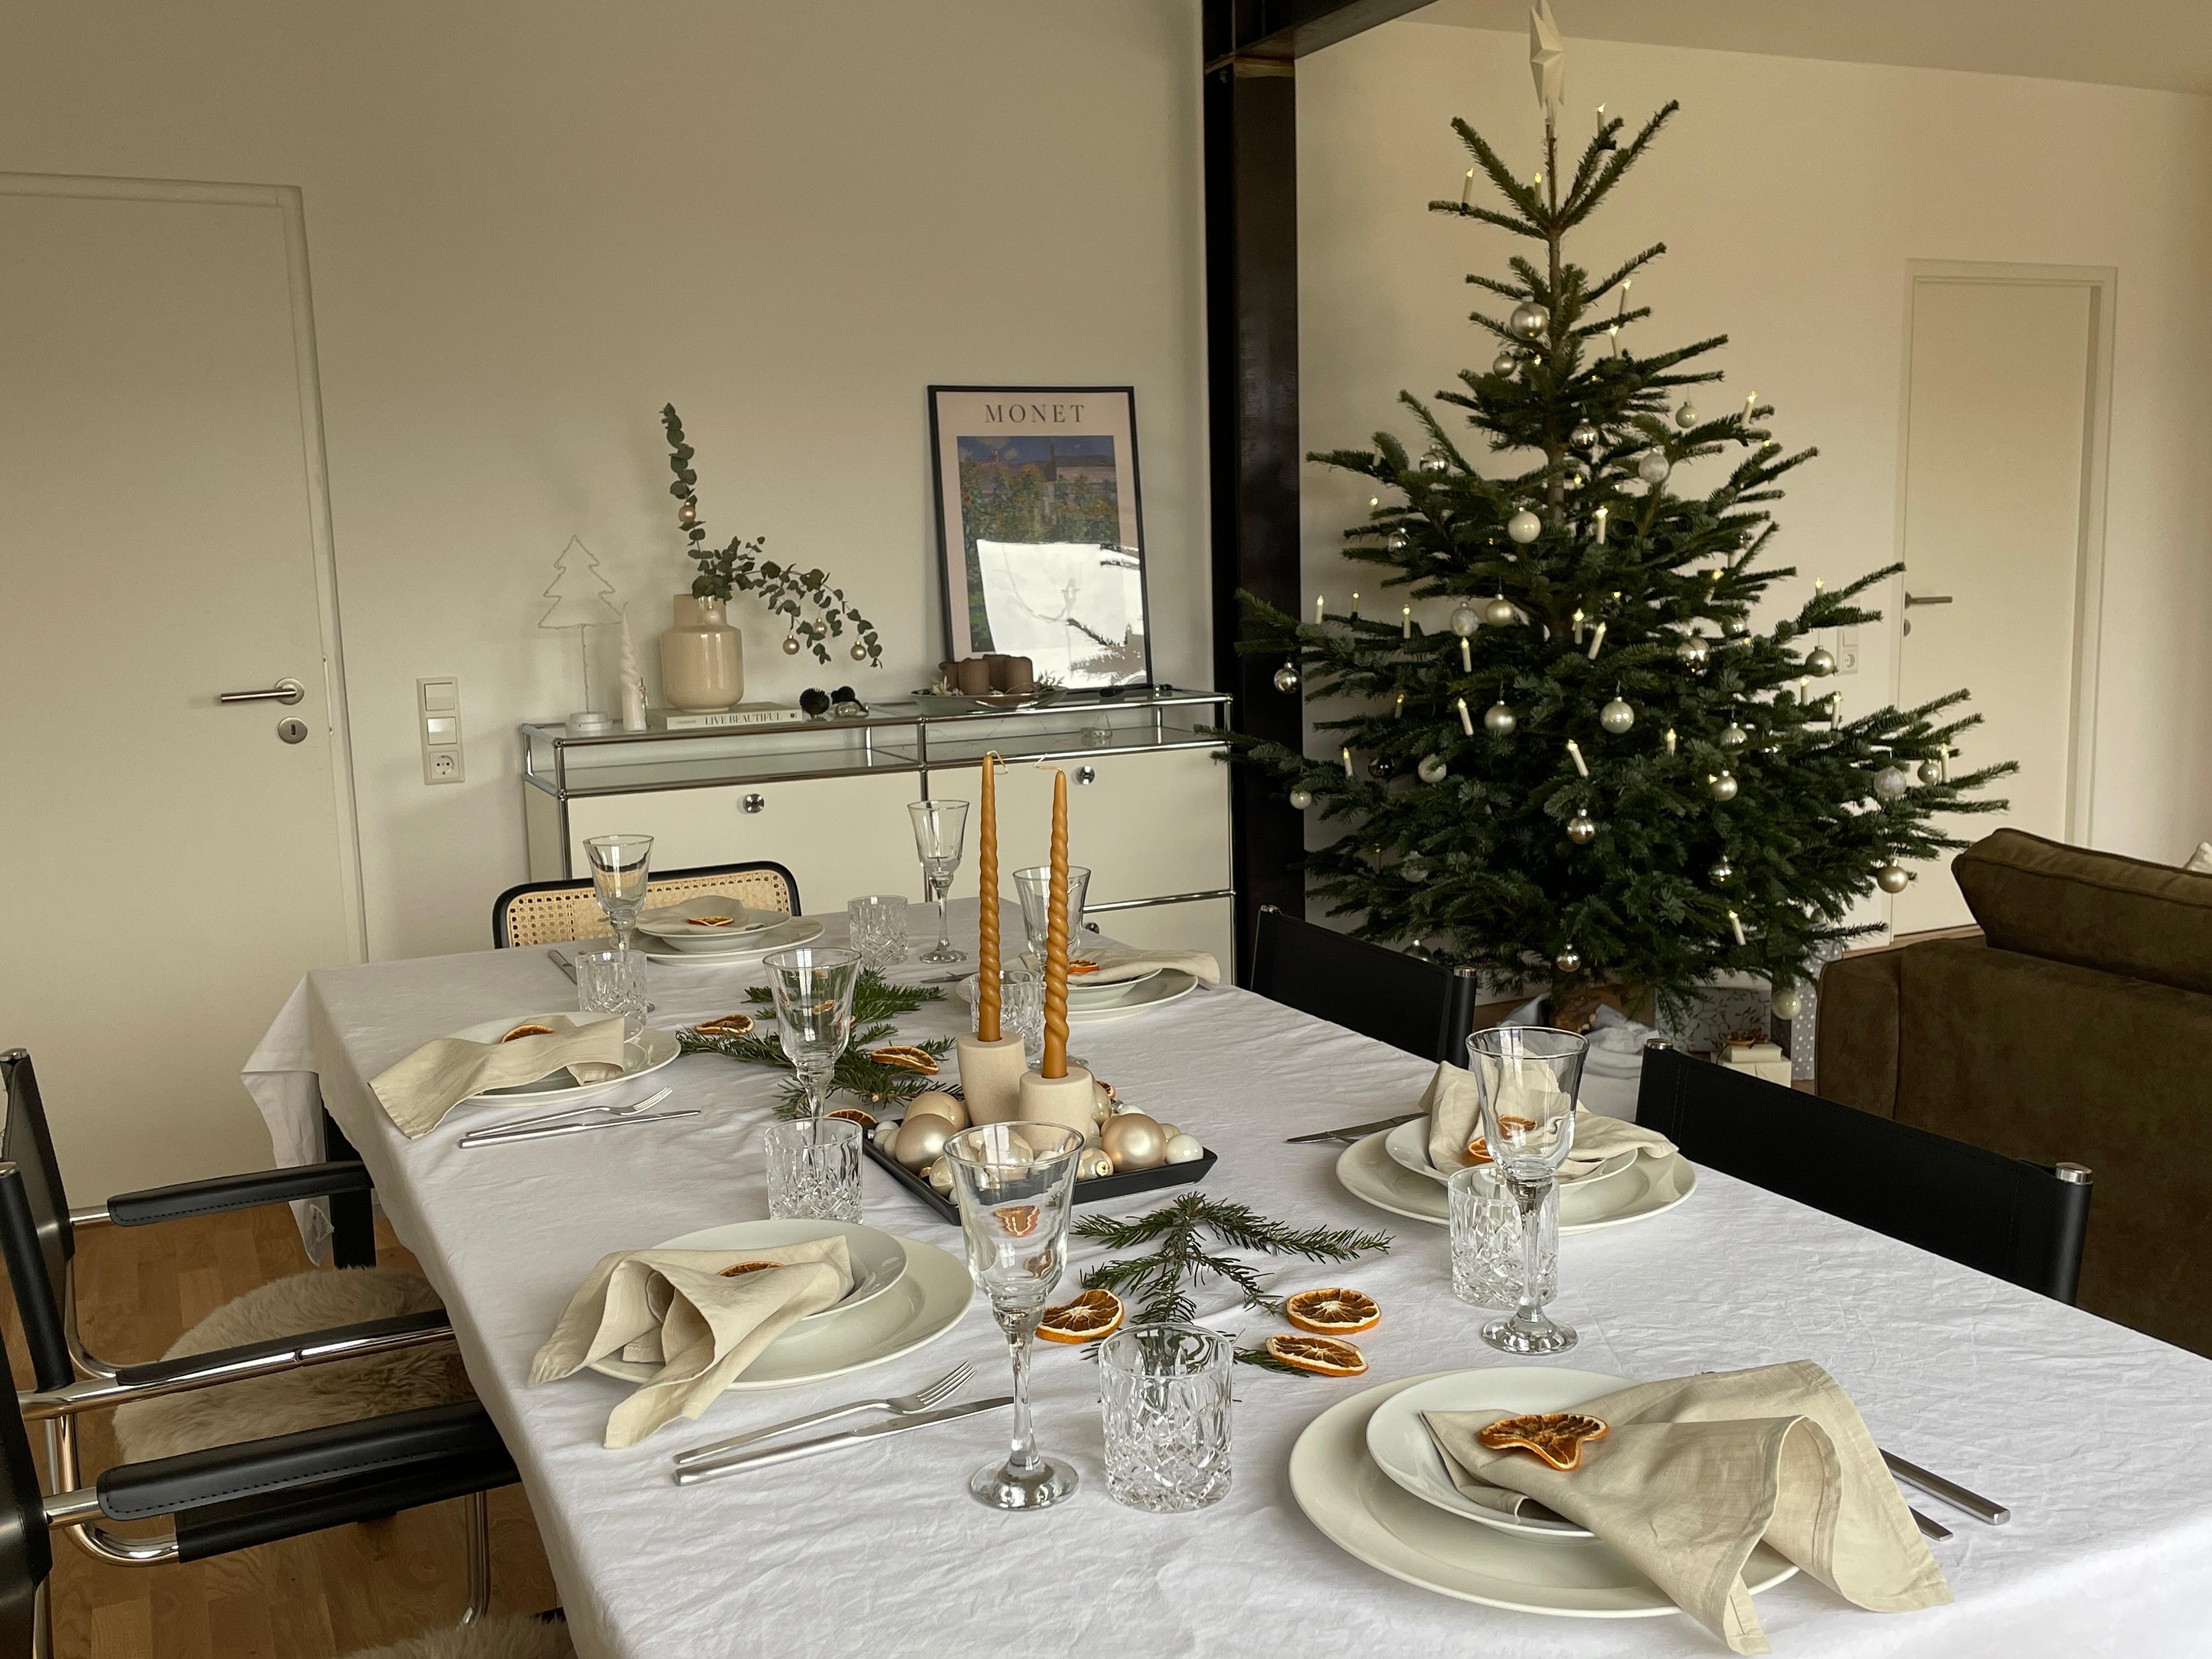 Fröhliche Weihnachten 🎄 
Unser Tisch ist auch schon ready 
#christmasday #dinnertime #christmasdecoration #mertyxmas 